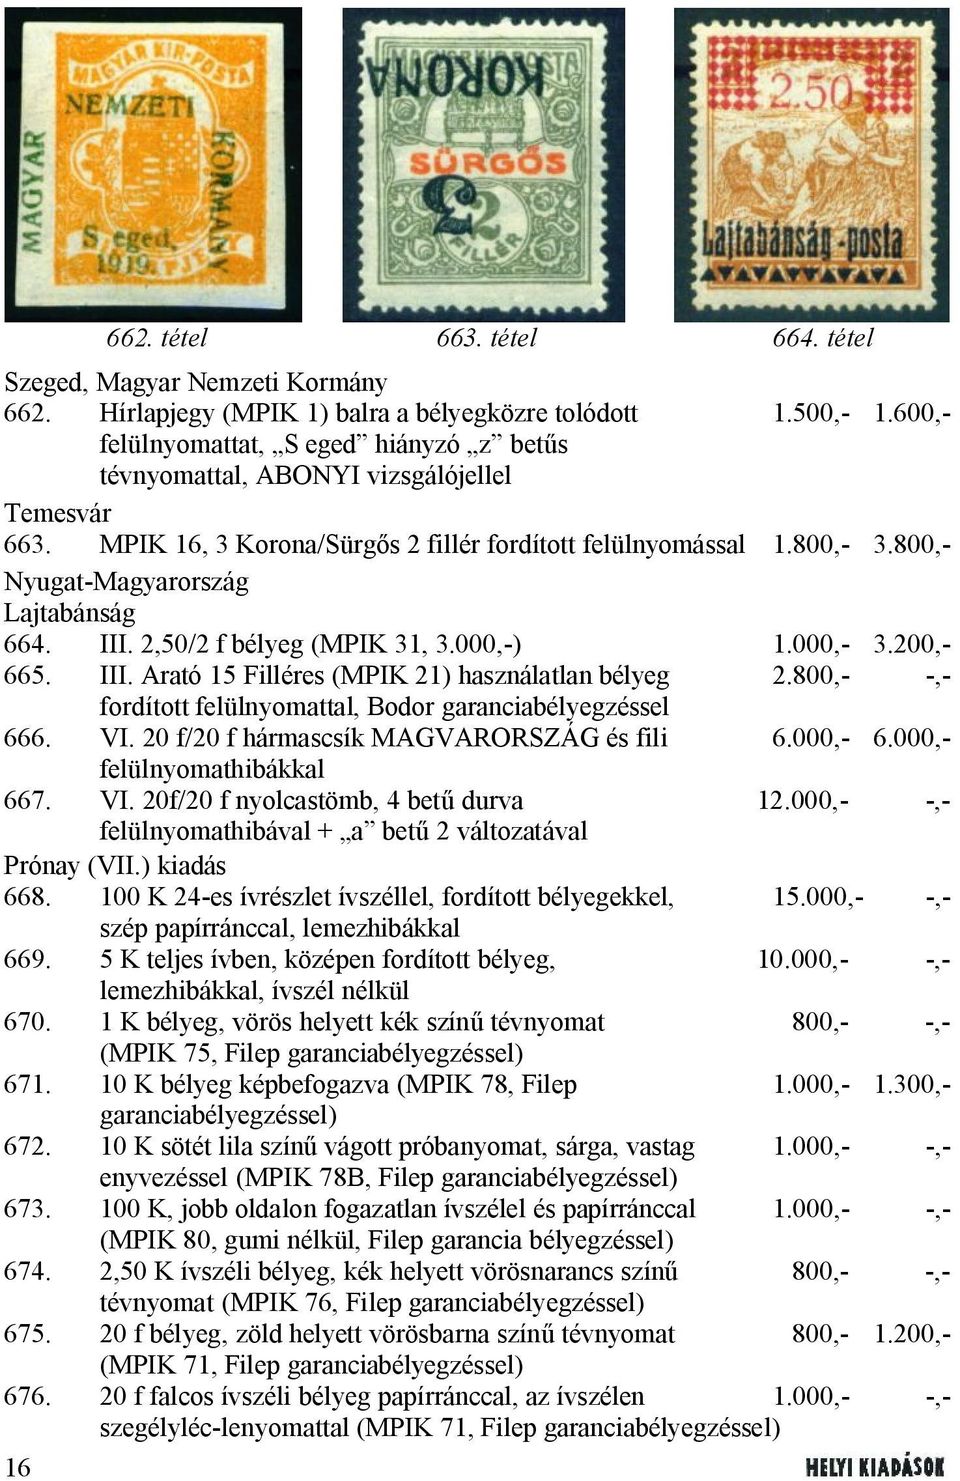 800,- Nyugat-Magyarország Lajtabánság 664. III. 2,50/2 f bélyeg (MPIK 31, 3.000,-) 1.000,- 3.200,- 665. III. Arató 15 Filléres (MPIK 21) használatlan bélyeg 2.